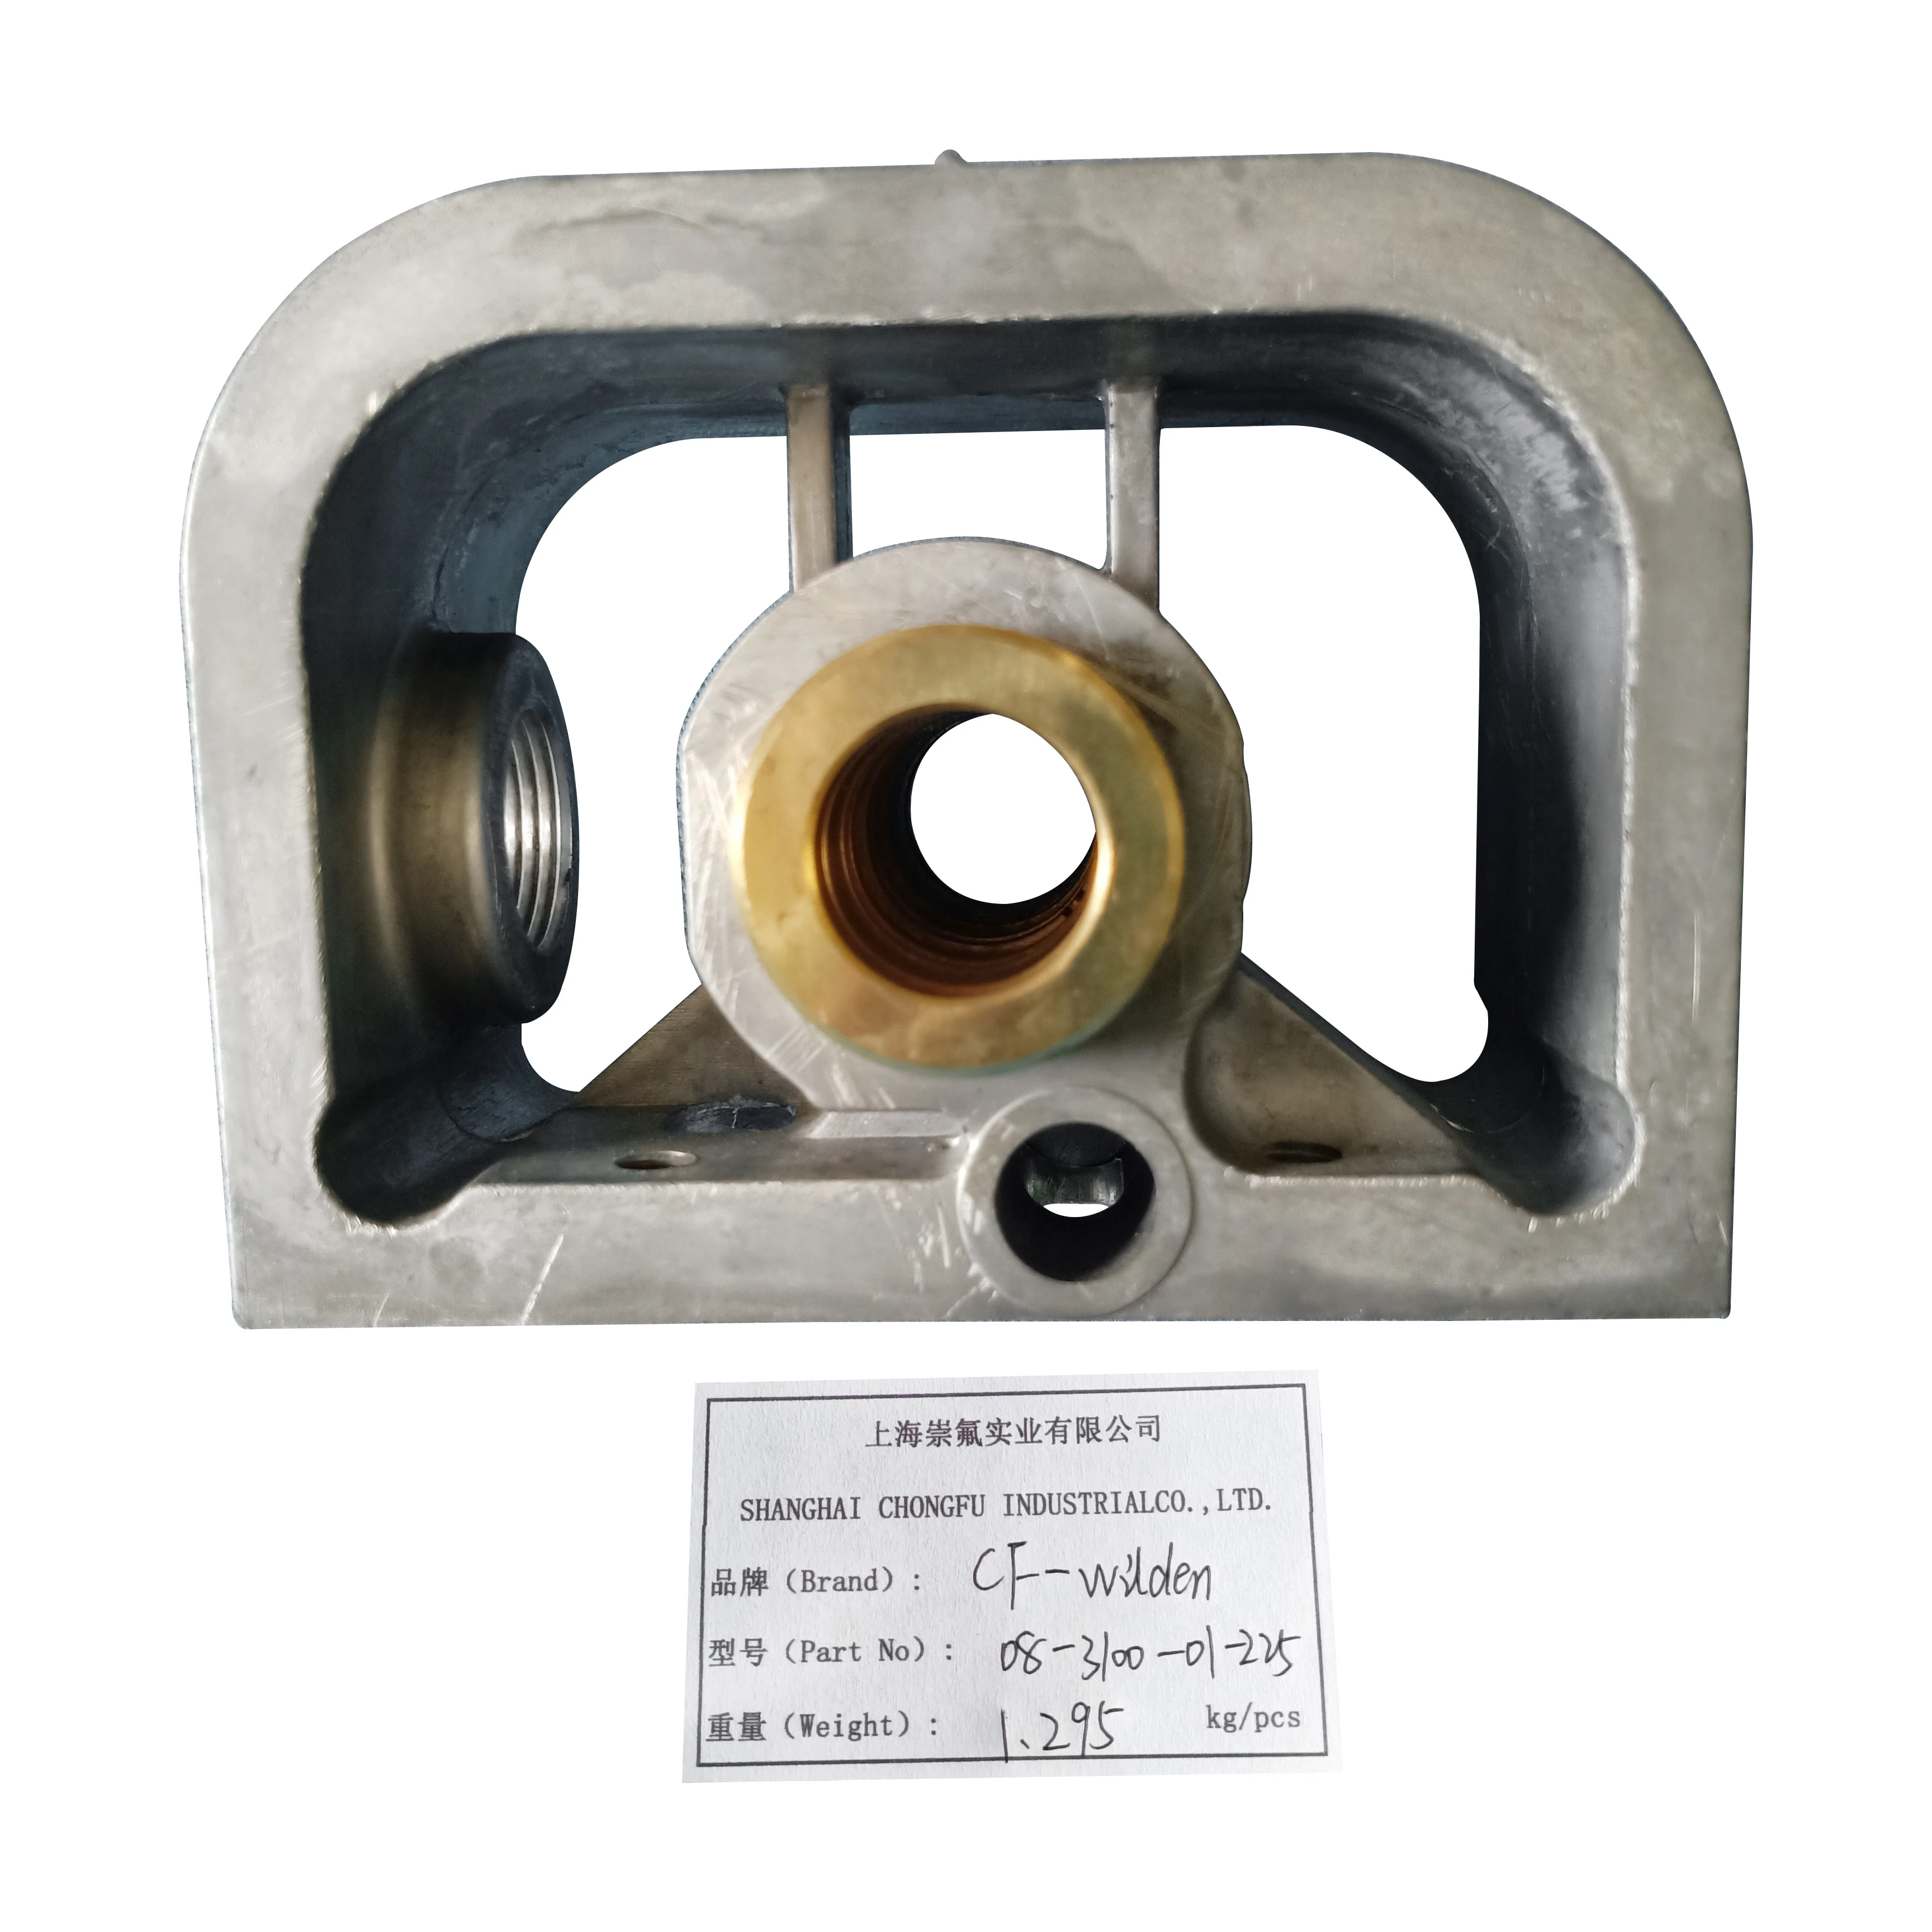 CF08-3100-01-225Aluminum alloy center block pump parts for water pump parts